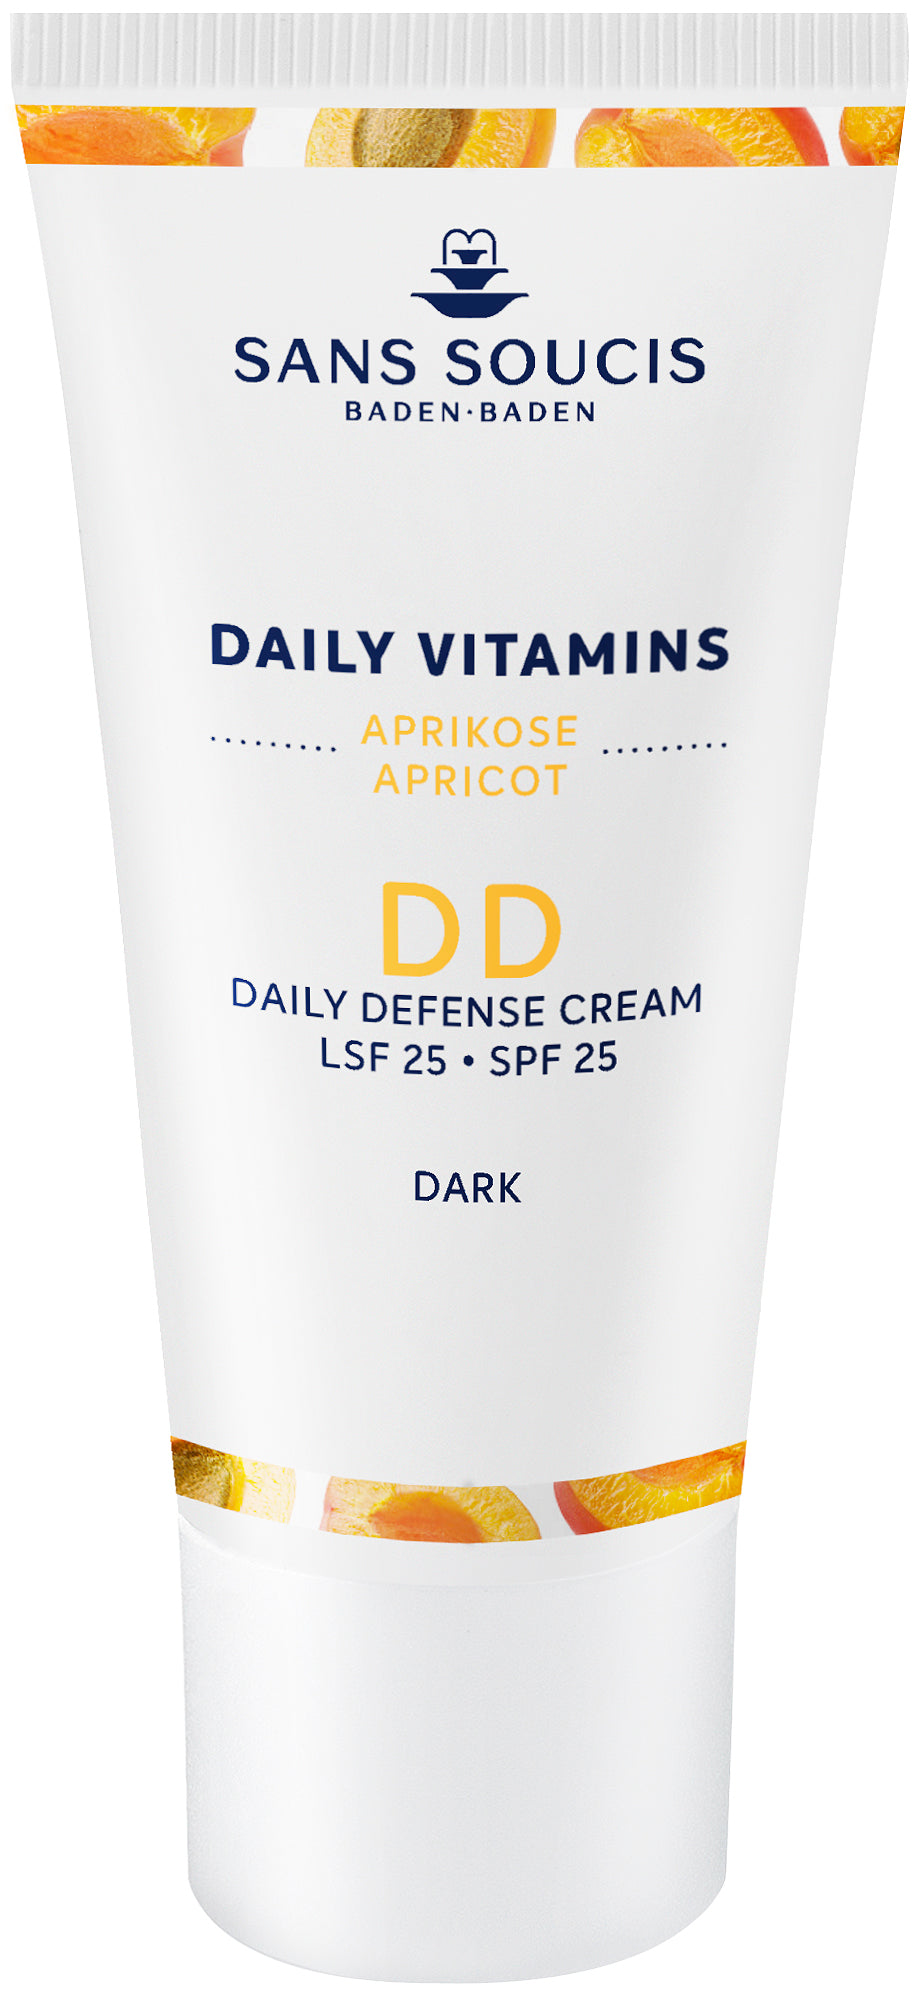 DD Daily Defense Cream dark LSF 25